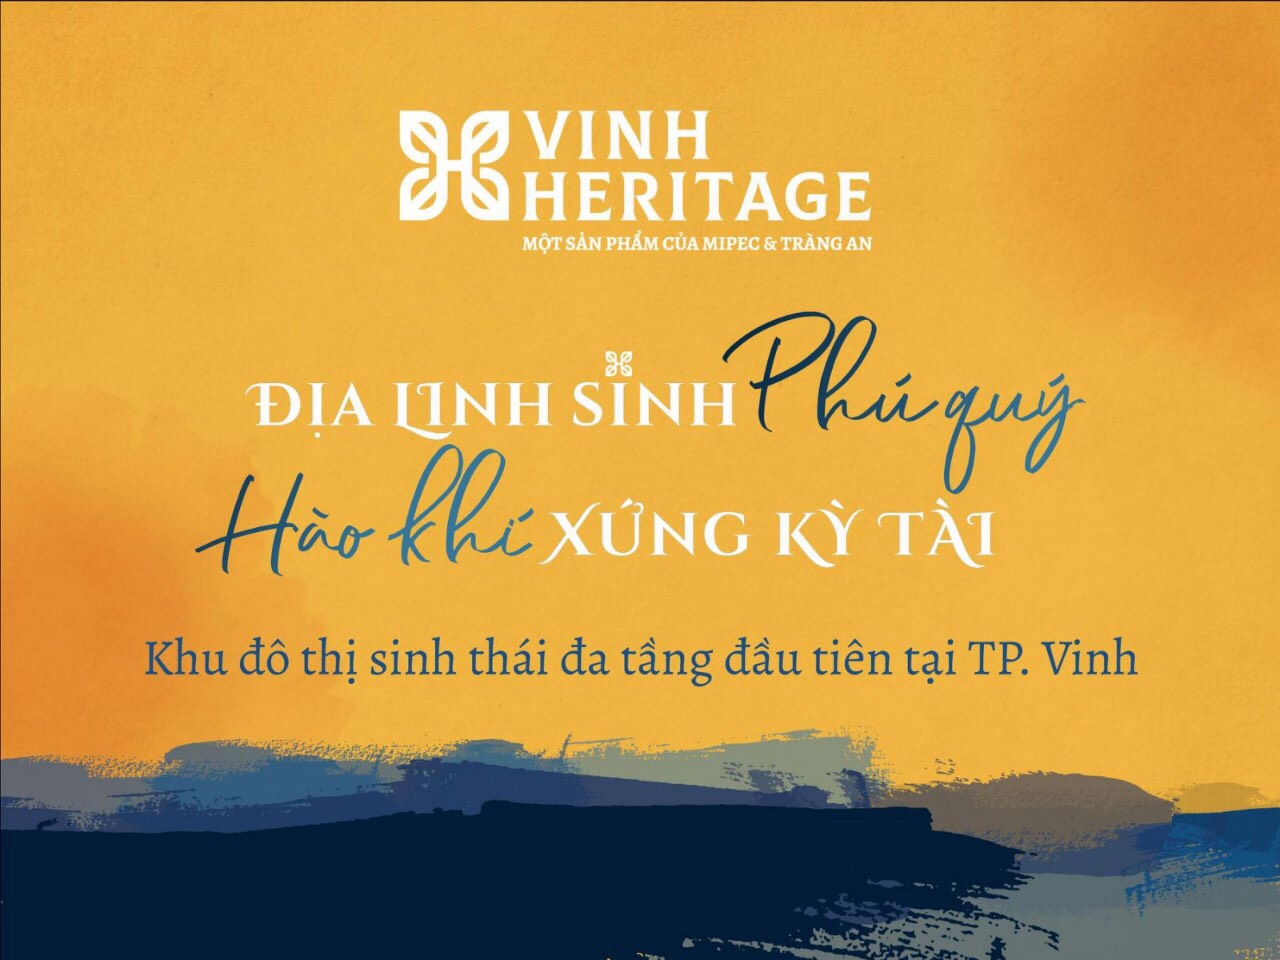 Bảng công khai thông tin về bất động sản đưa vào kinh doanh của dự án Vinh Heritage